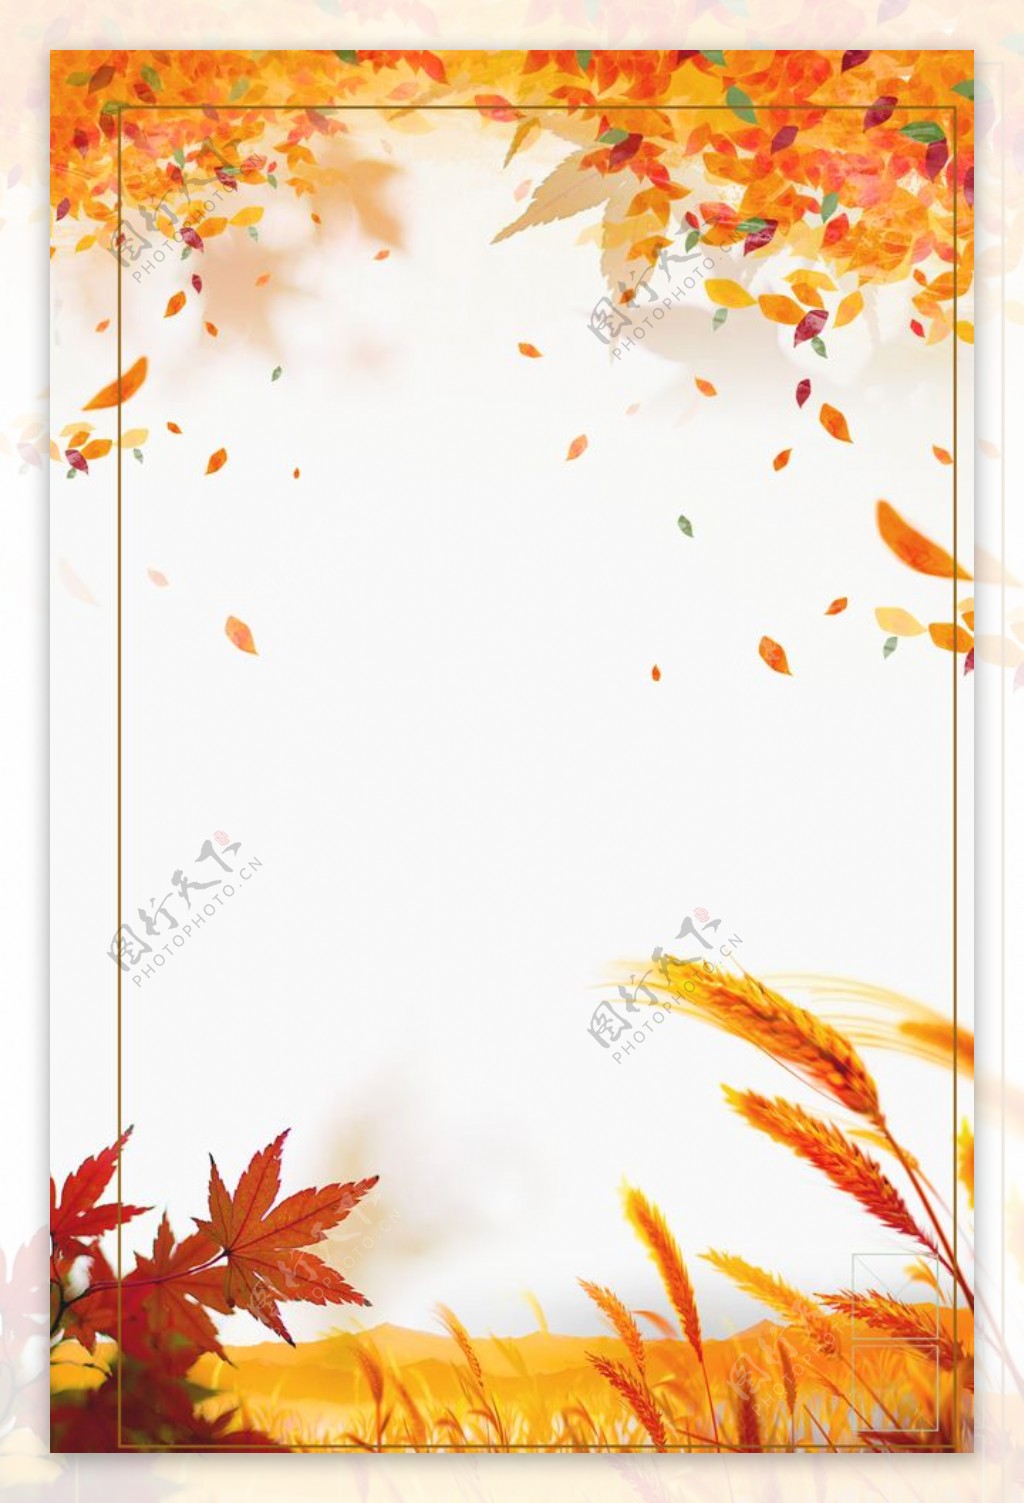 手绘秋天背景图片